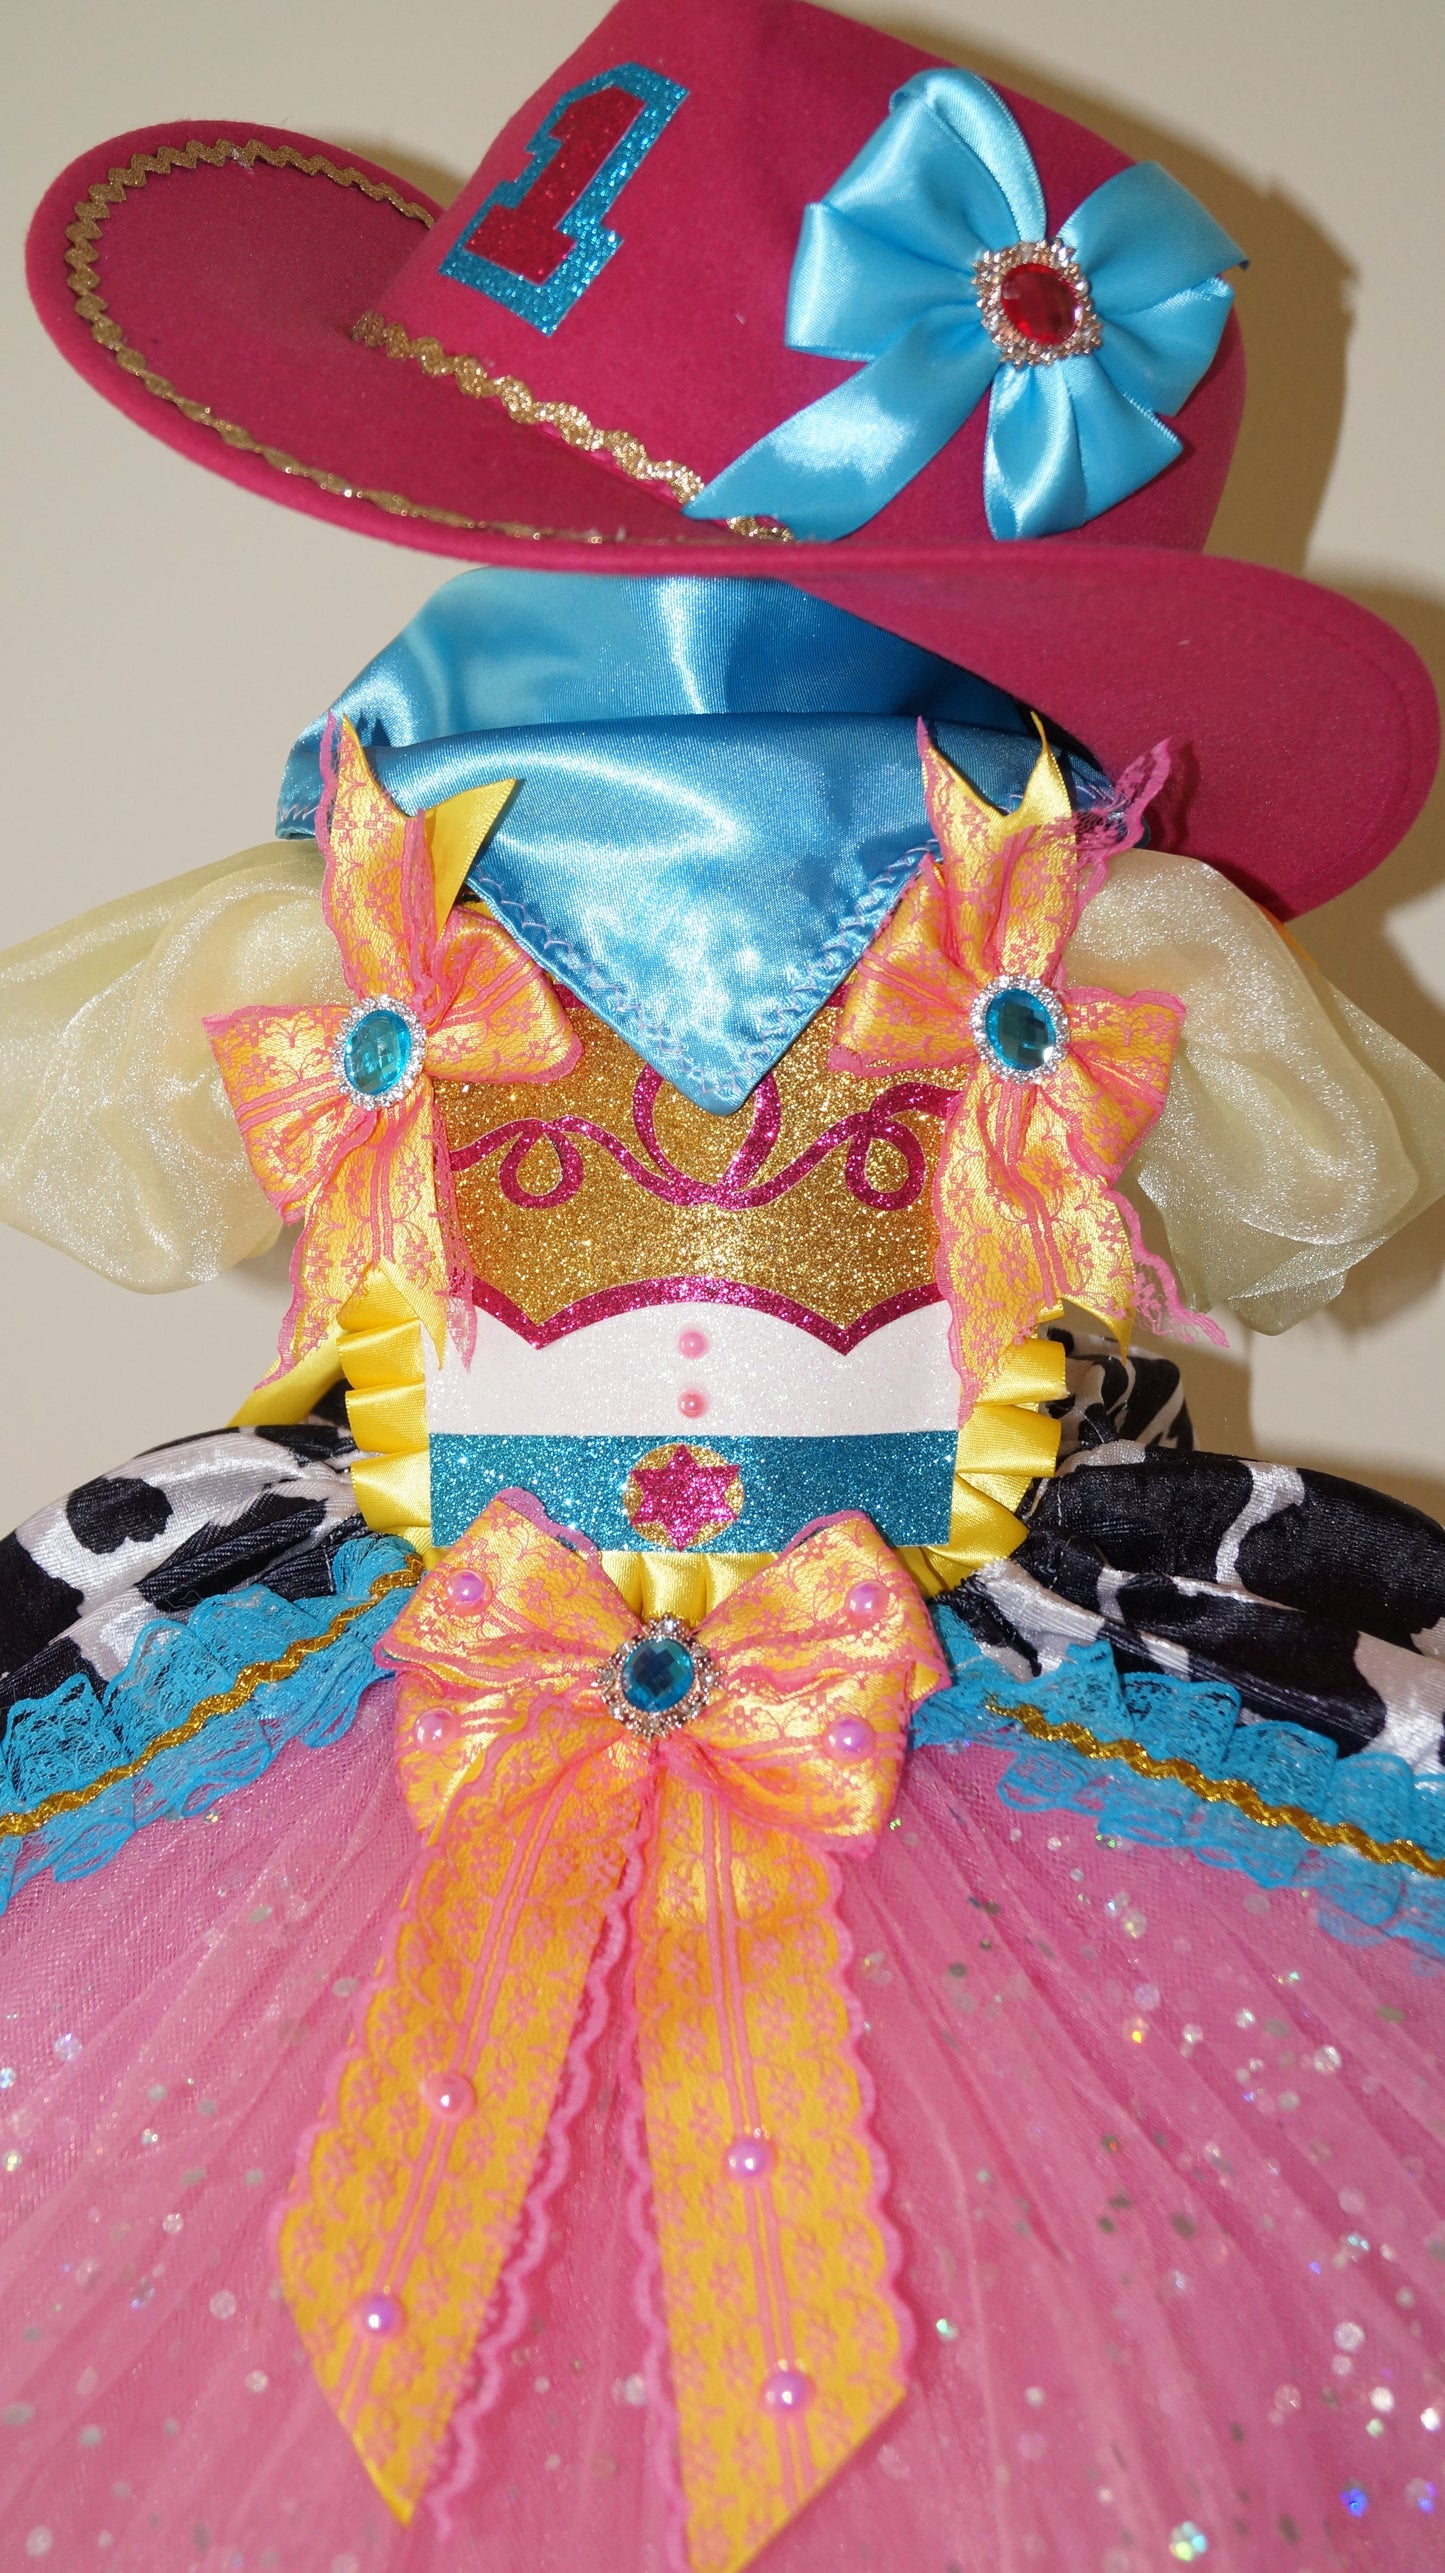 Pink Jessie Toy Story Inspired Tutu Dress